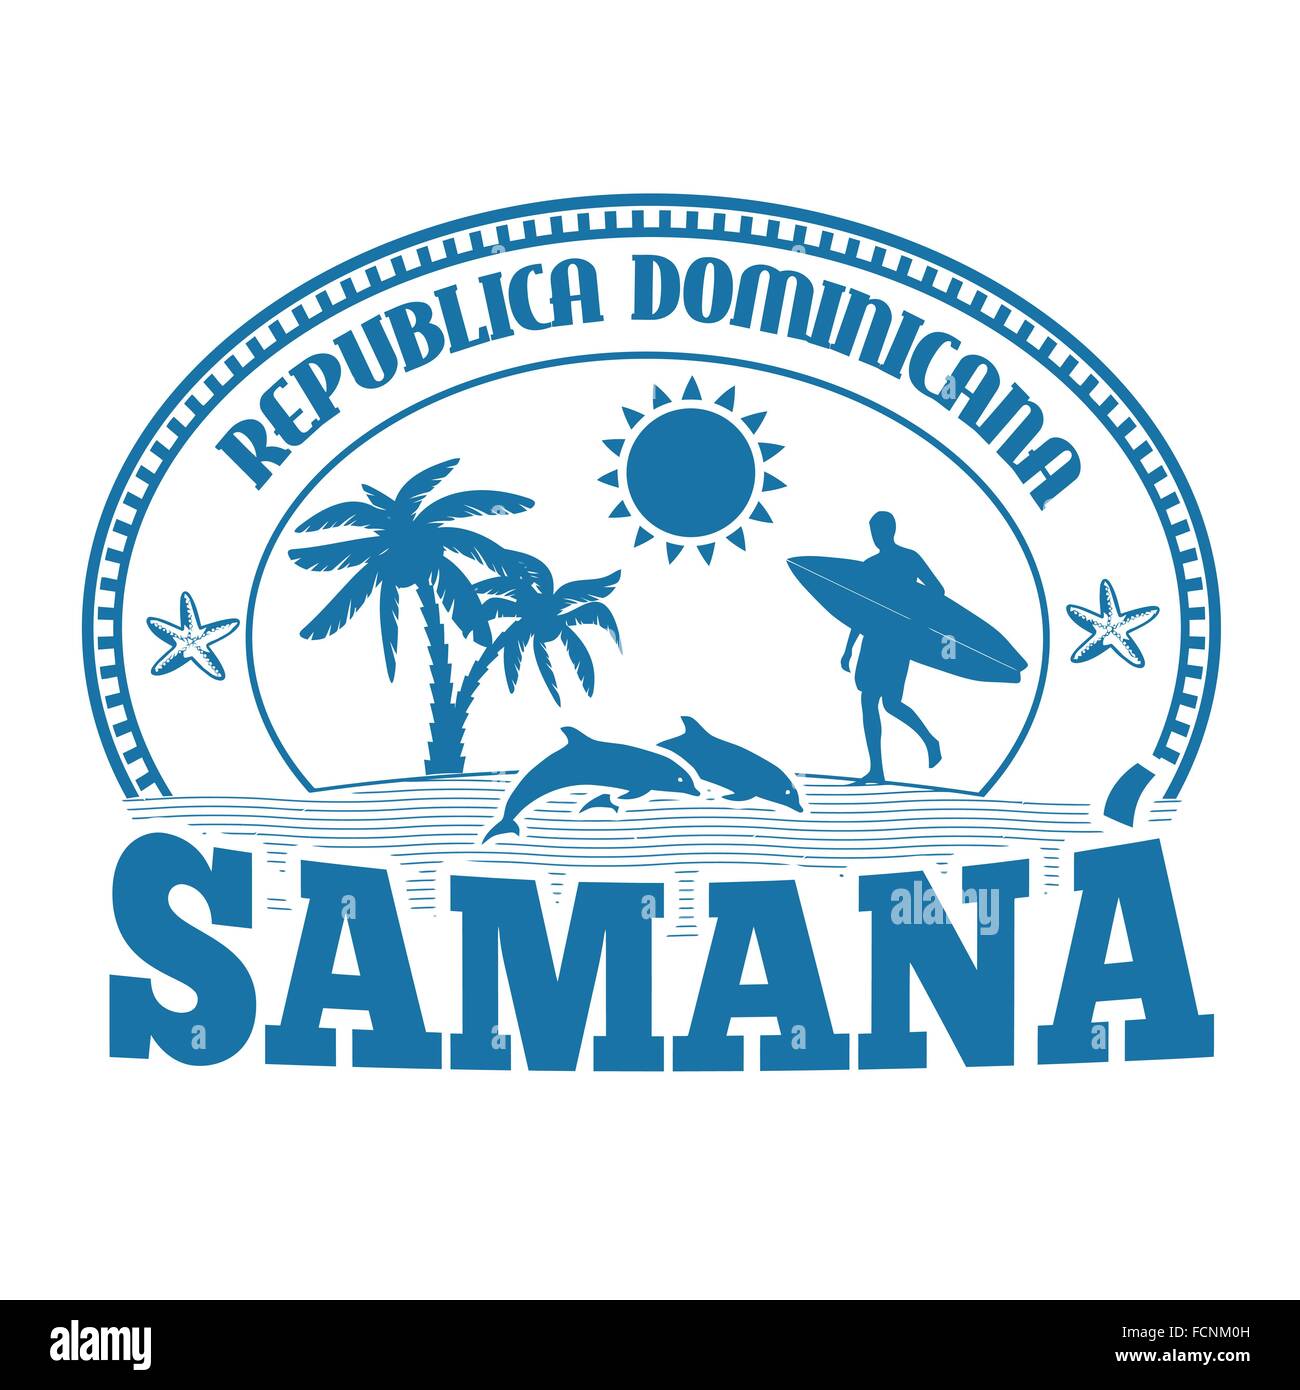 Samana, Dominikanische Republik, Stempel oder Beschriftung auf weißem Hintergrund, Vektor-illustration Stock Vektor